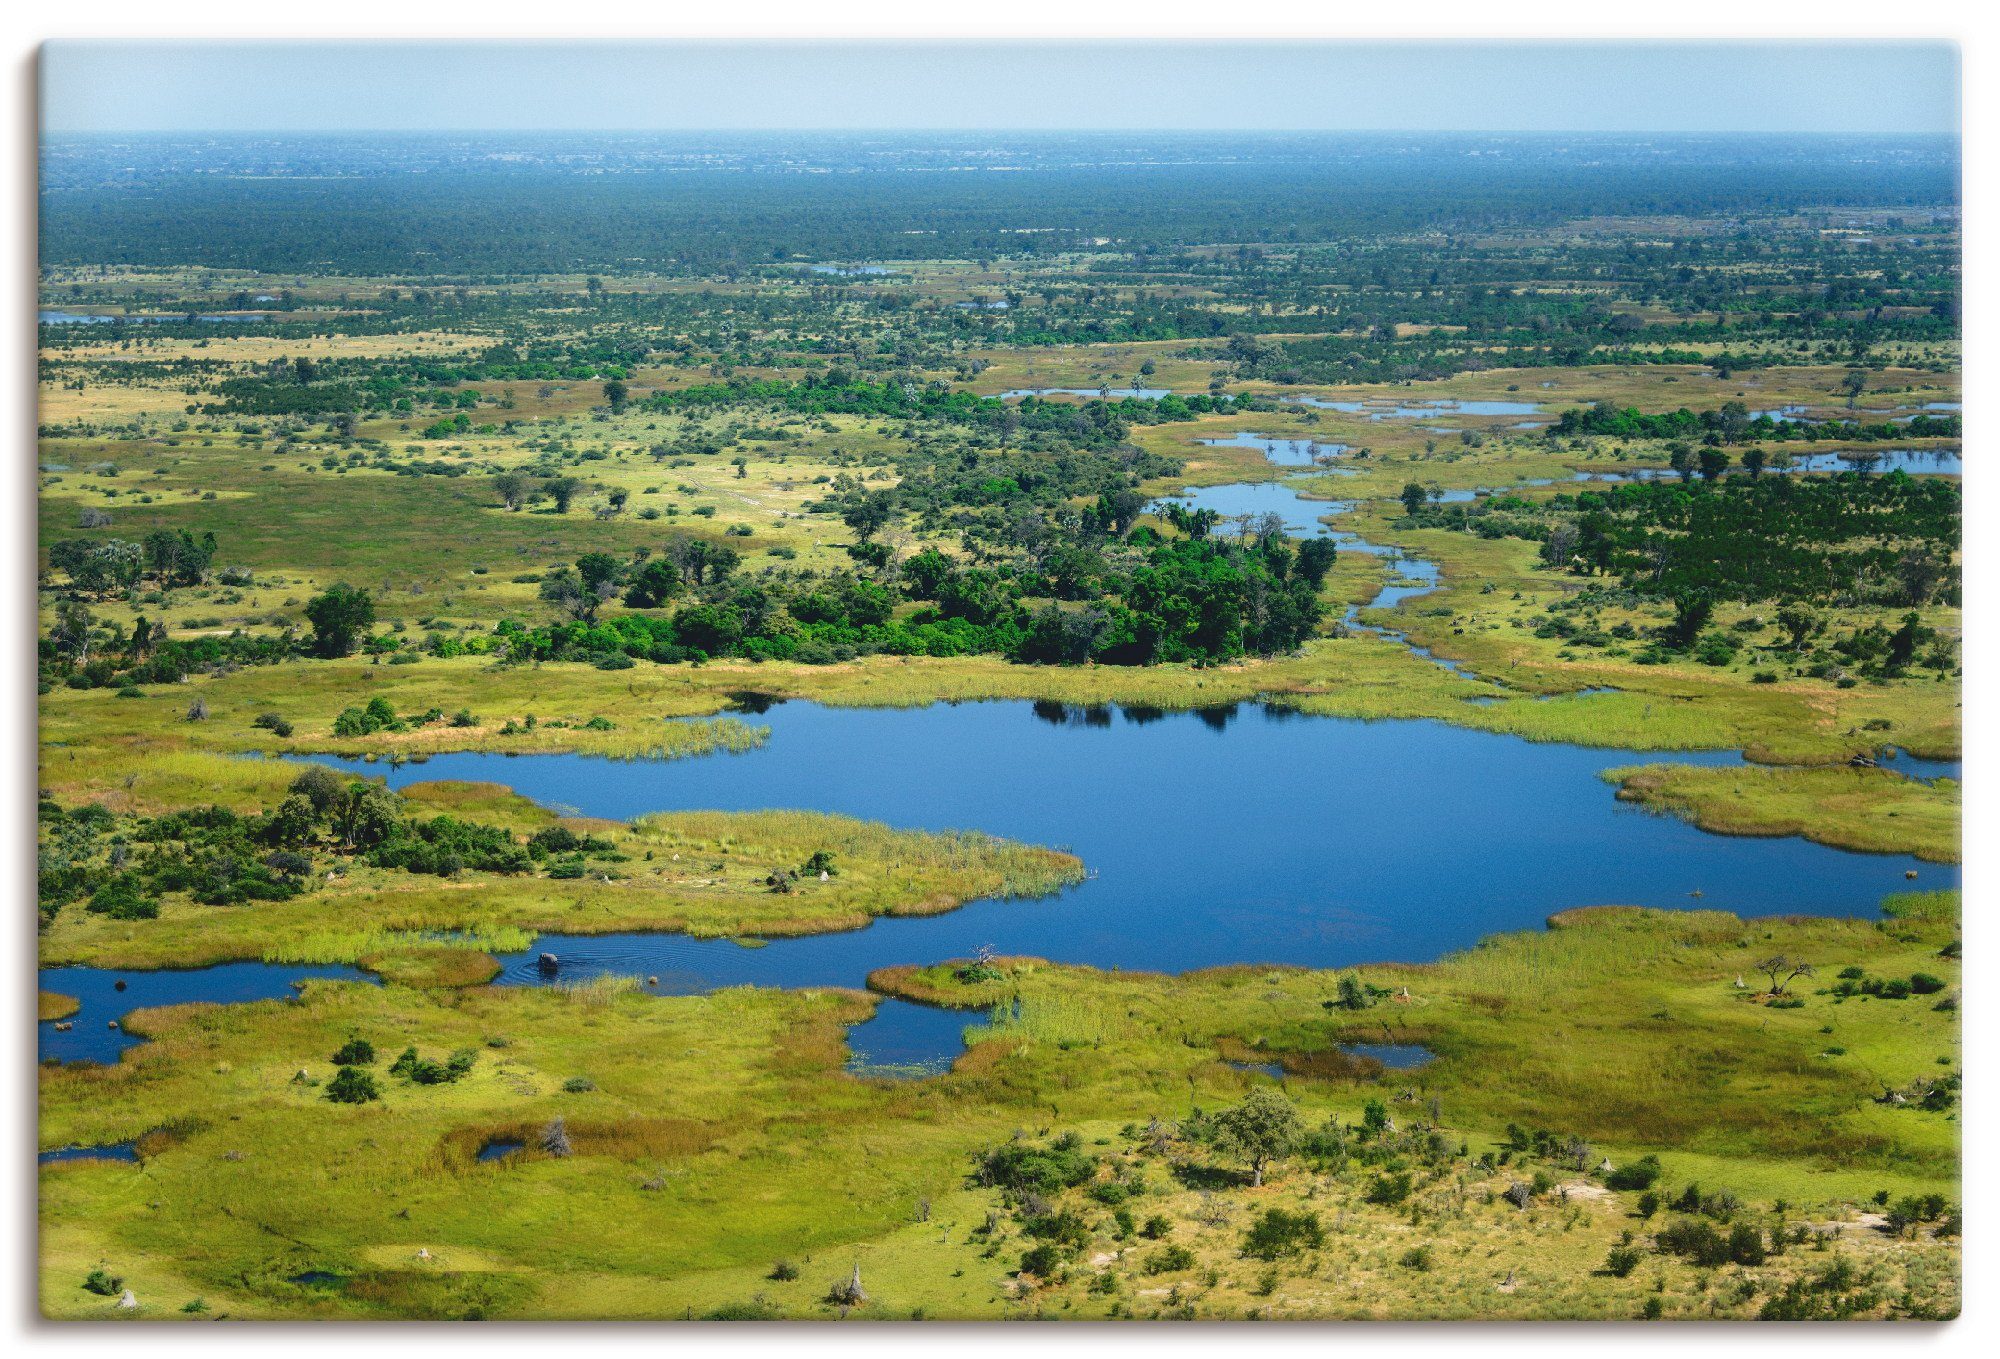 Artland Artprint Okavangodelta in vele afmetingen & productsoorten - artprint van aluminium / artprint voor buiten, artprint op linnen, poster, muursticker / wandfolie ook geschikt